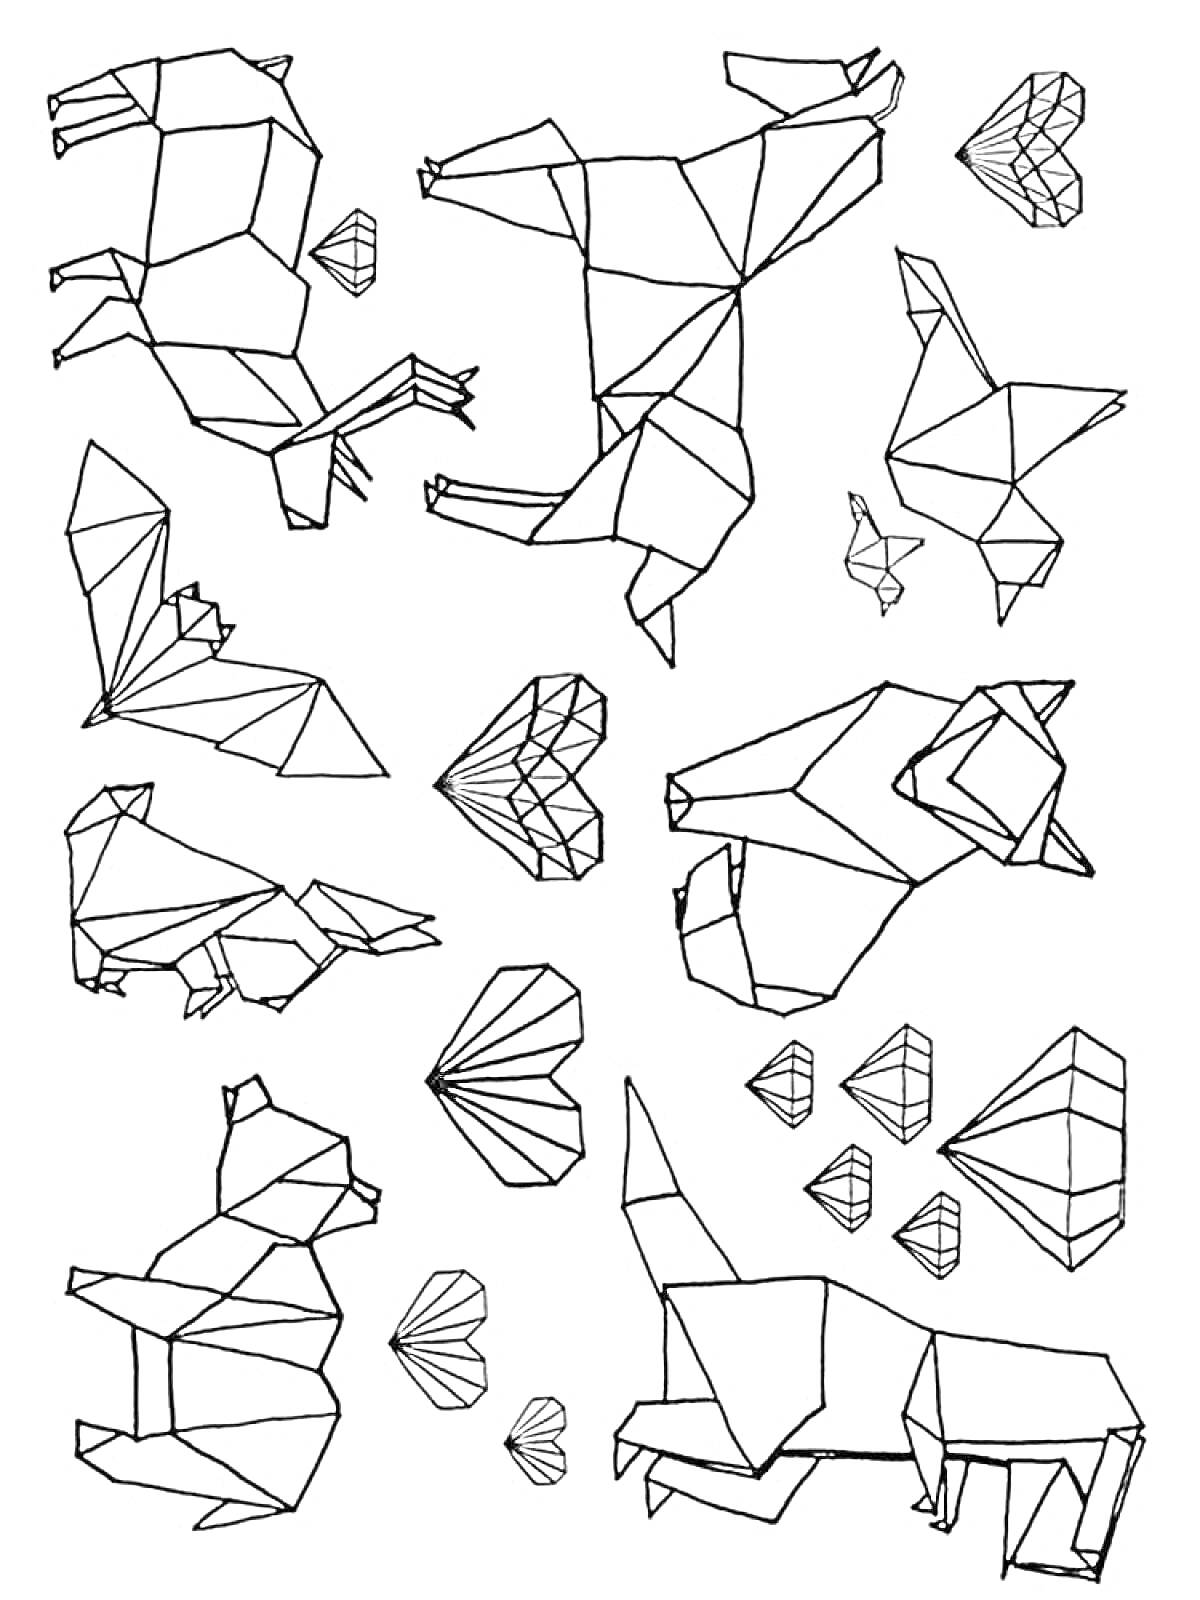 Раскраска Оригами: медведь, олень, птица, рыба, лиса, заяц, лиса с птенцом, алмазы